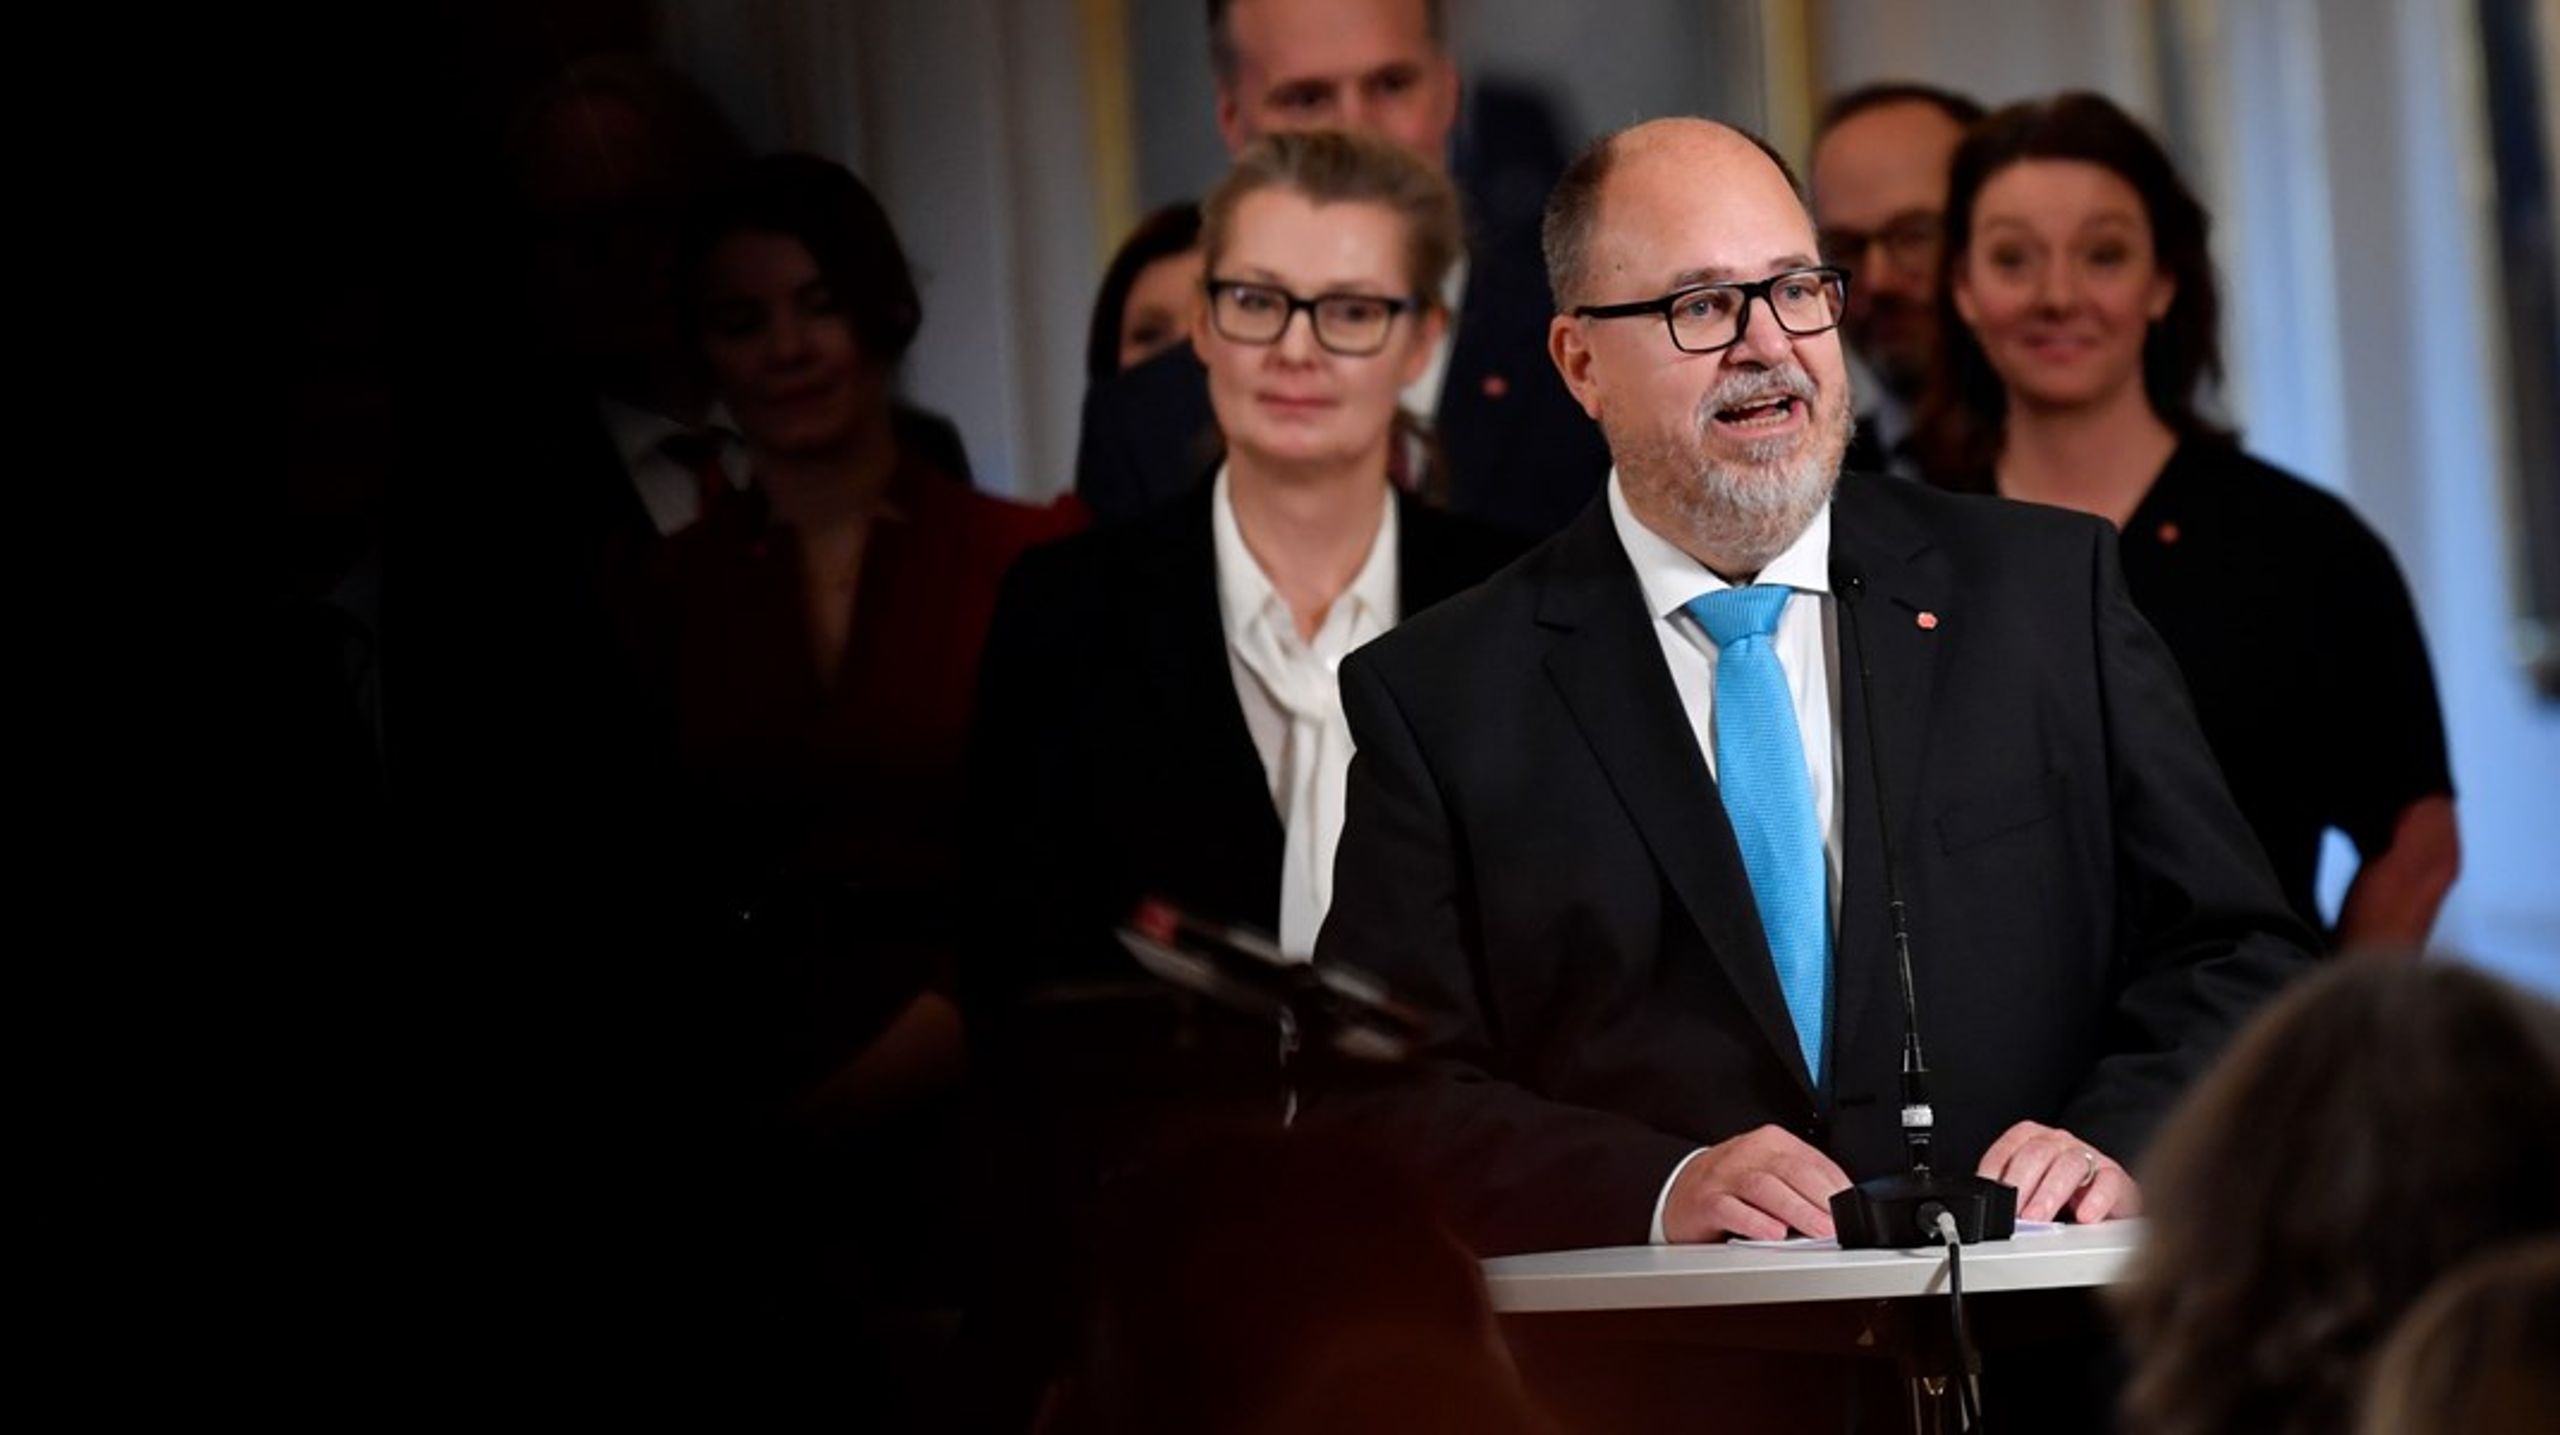 Karl-Petter Thorwaldsson i riksdagens sammanbindningsbana, kort efter att han presenterats som ny näringsminister.